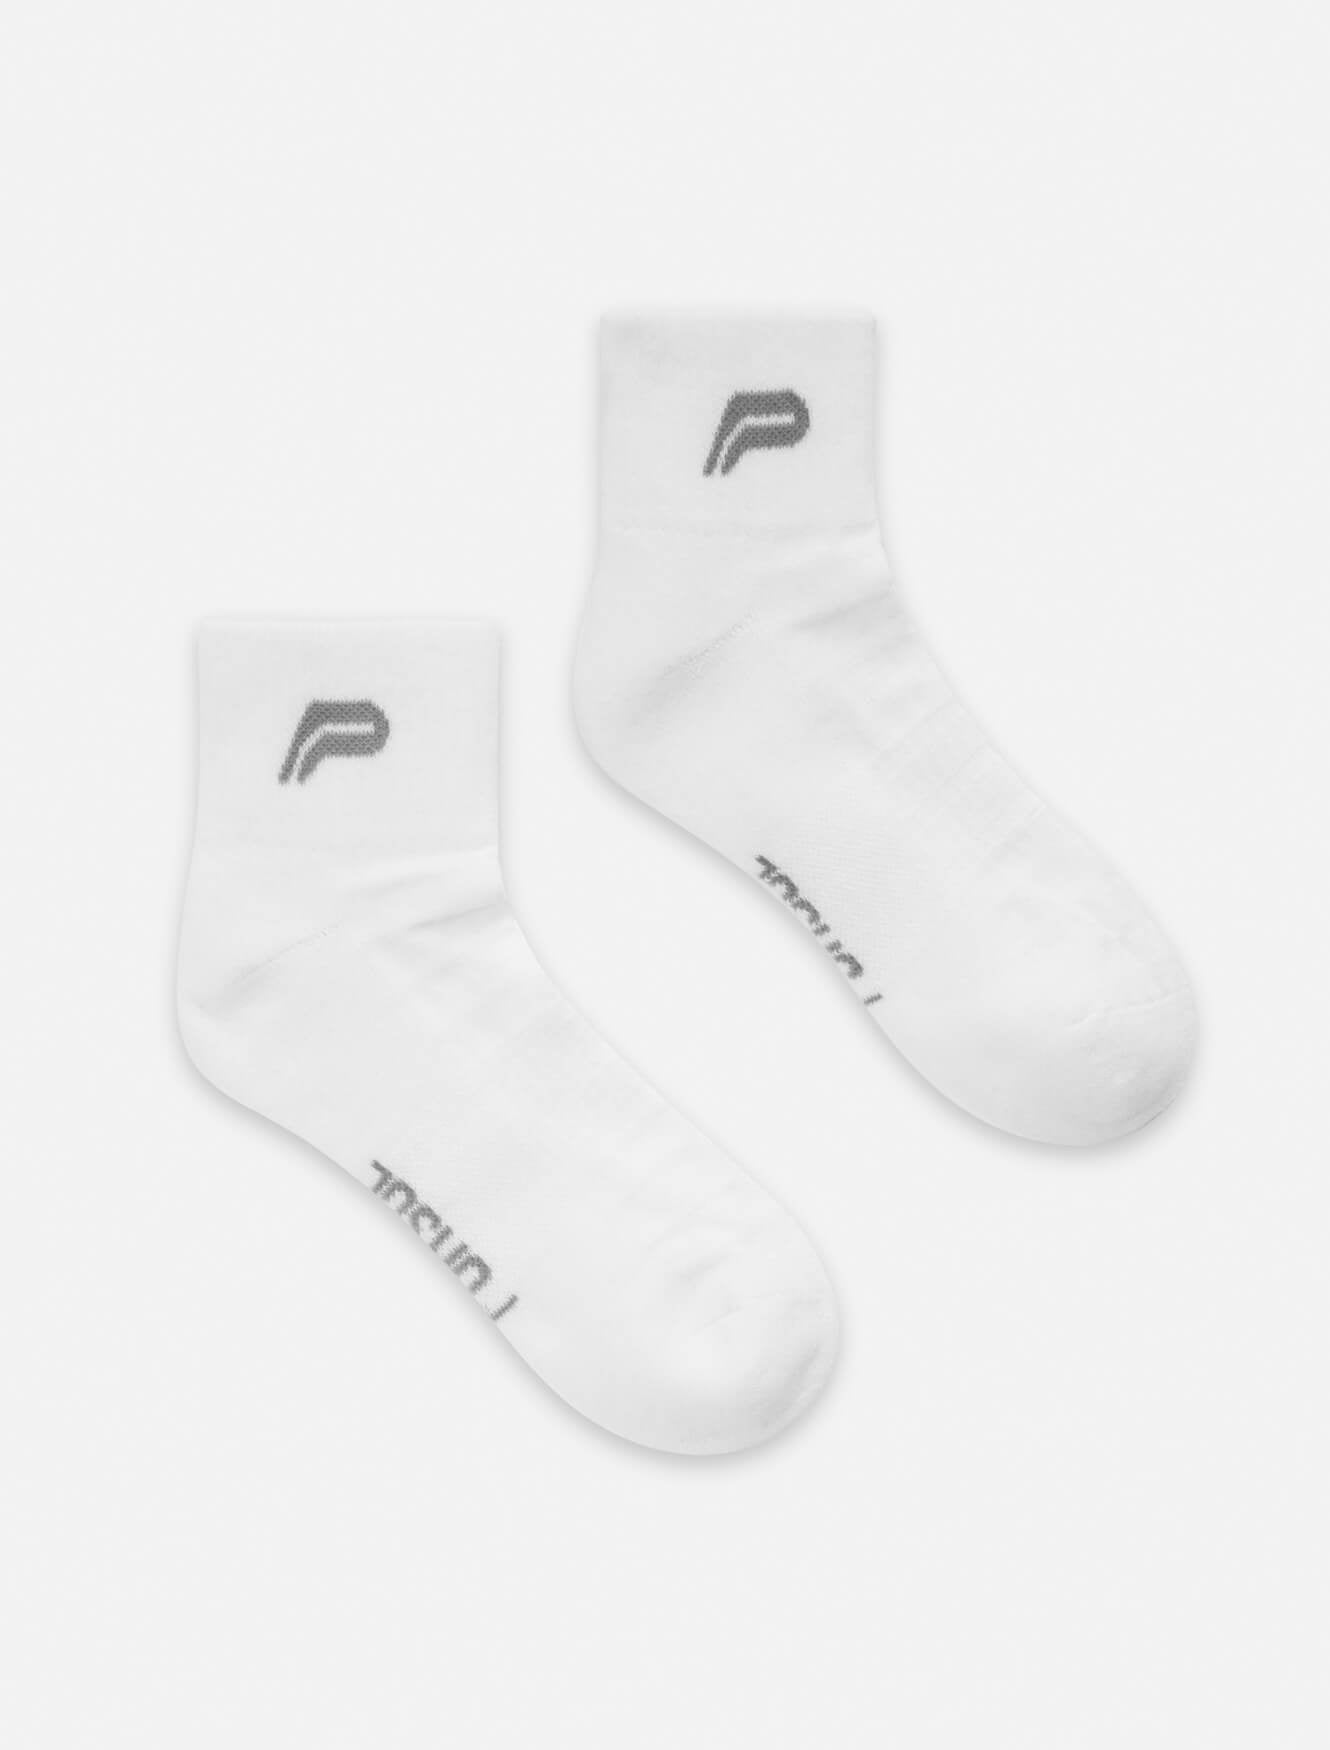 Premium Cushioned Running Socks / White Pursue Fitness 1